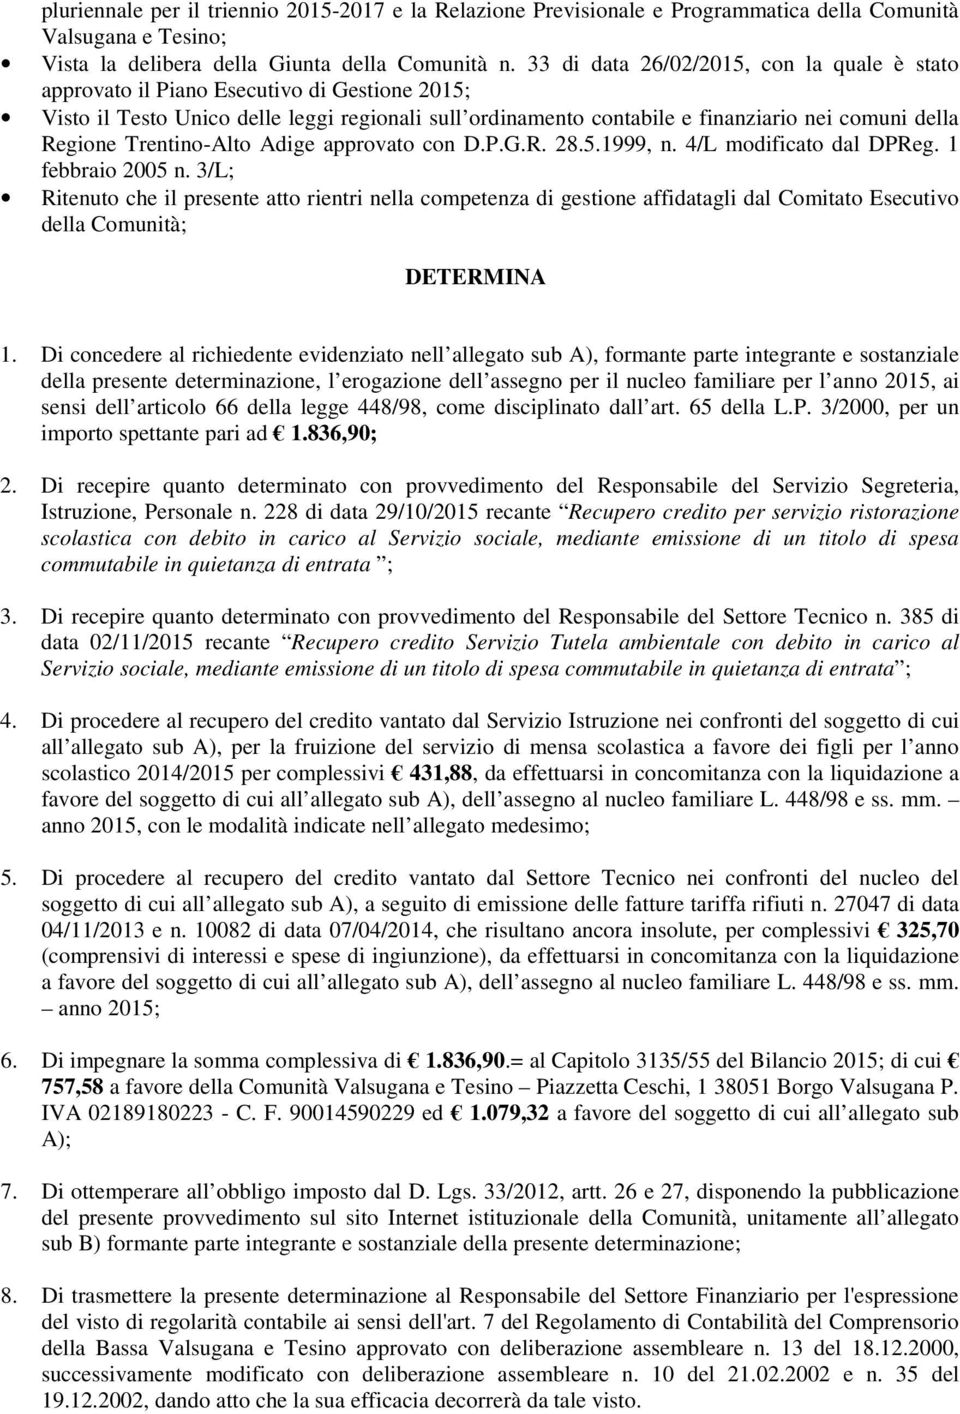 Trentino-Alto Adige approvato con D.P.G.R. 28.5.1999, n. 4/L modificato dal DPReg. 1 febbraio 2005 n.